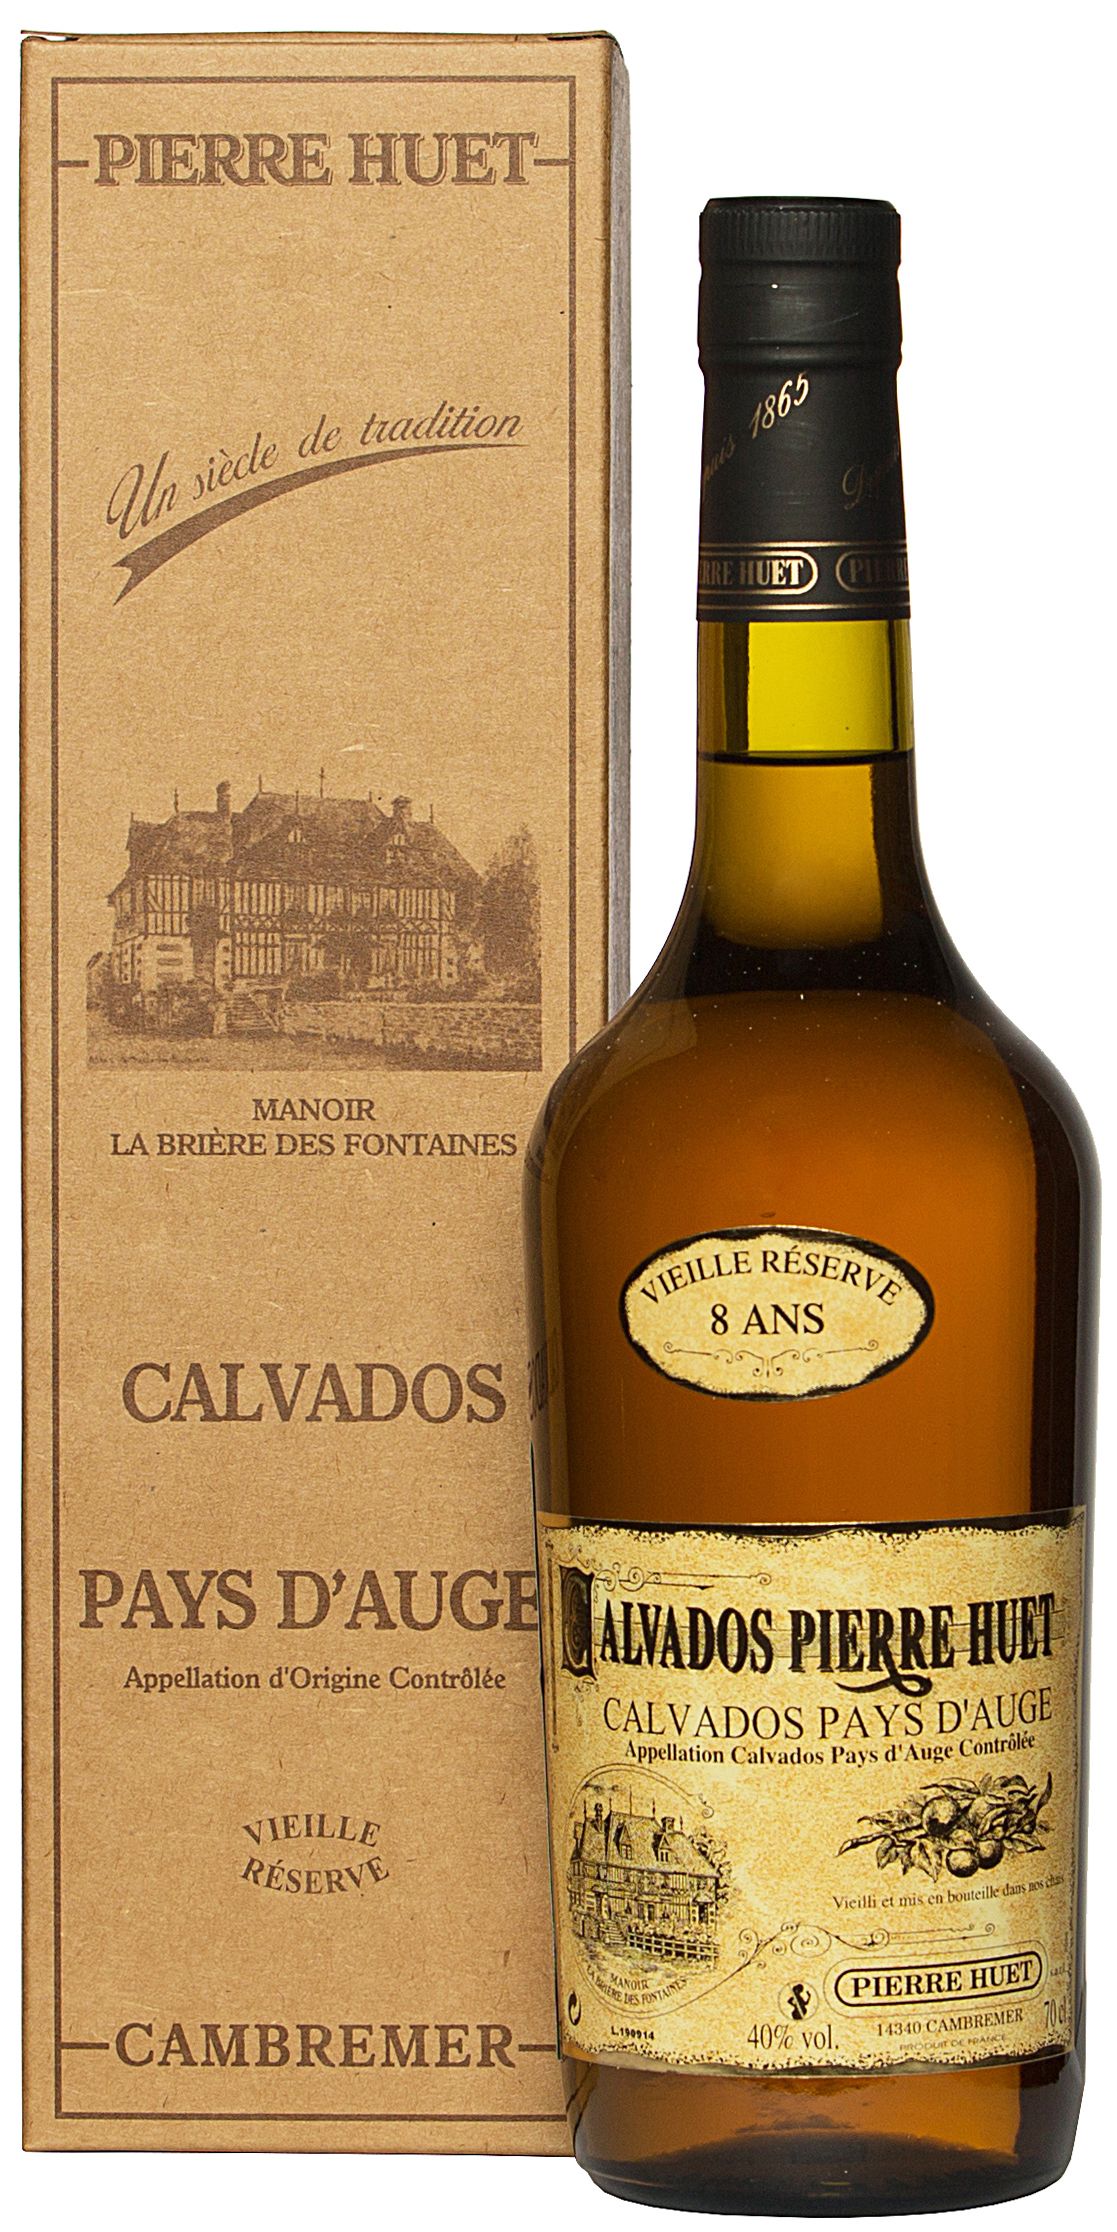 Pierre Huet, Calvados Pays d'Auge Vielle 12 Ans (Gift Box)